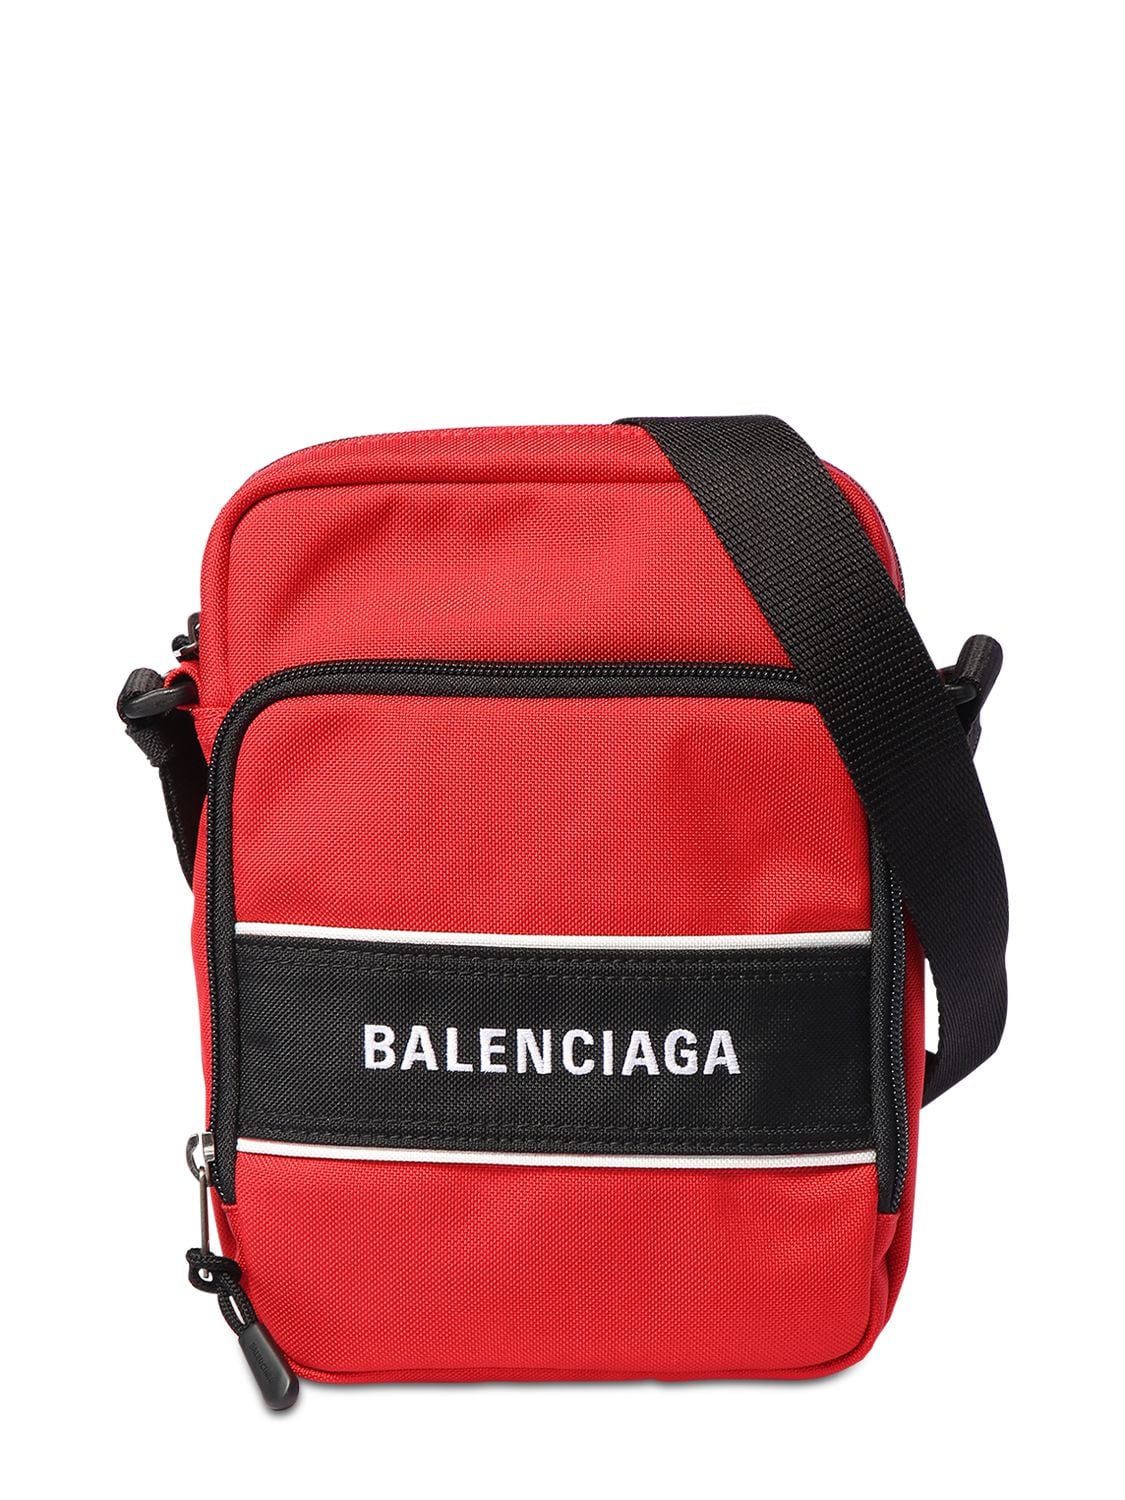 Balenciaga Red Backpack Purse | semashow.com